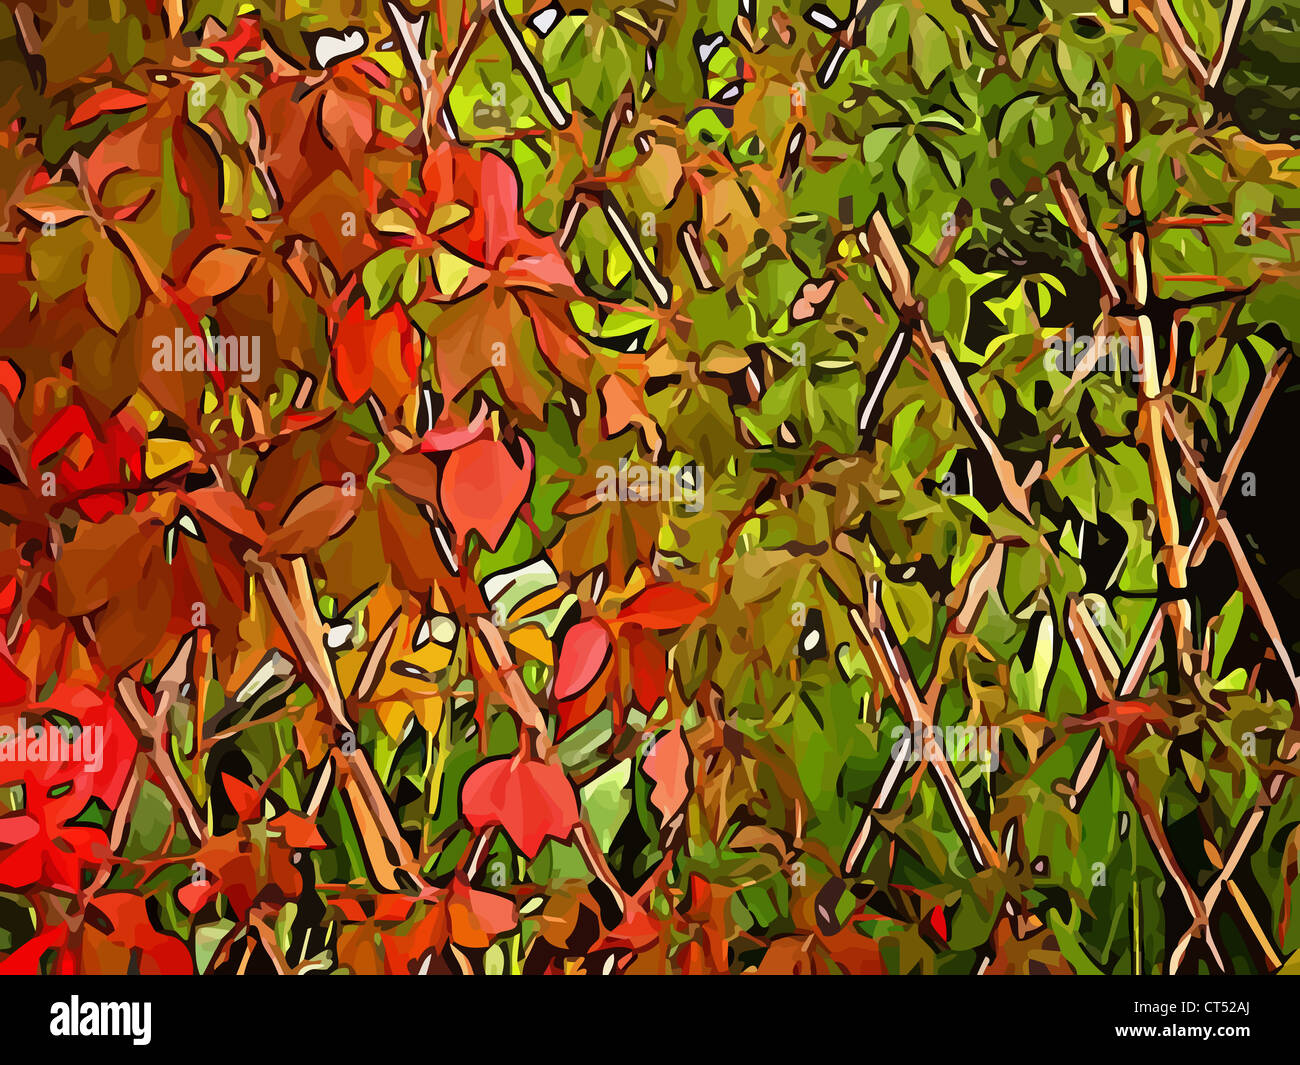 Illustration (vecteur) de semi feuilles vertes et rouges sur un support de canne Banque D'Images